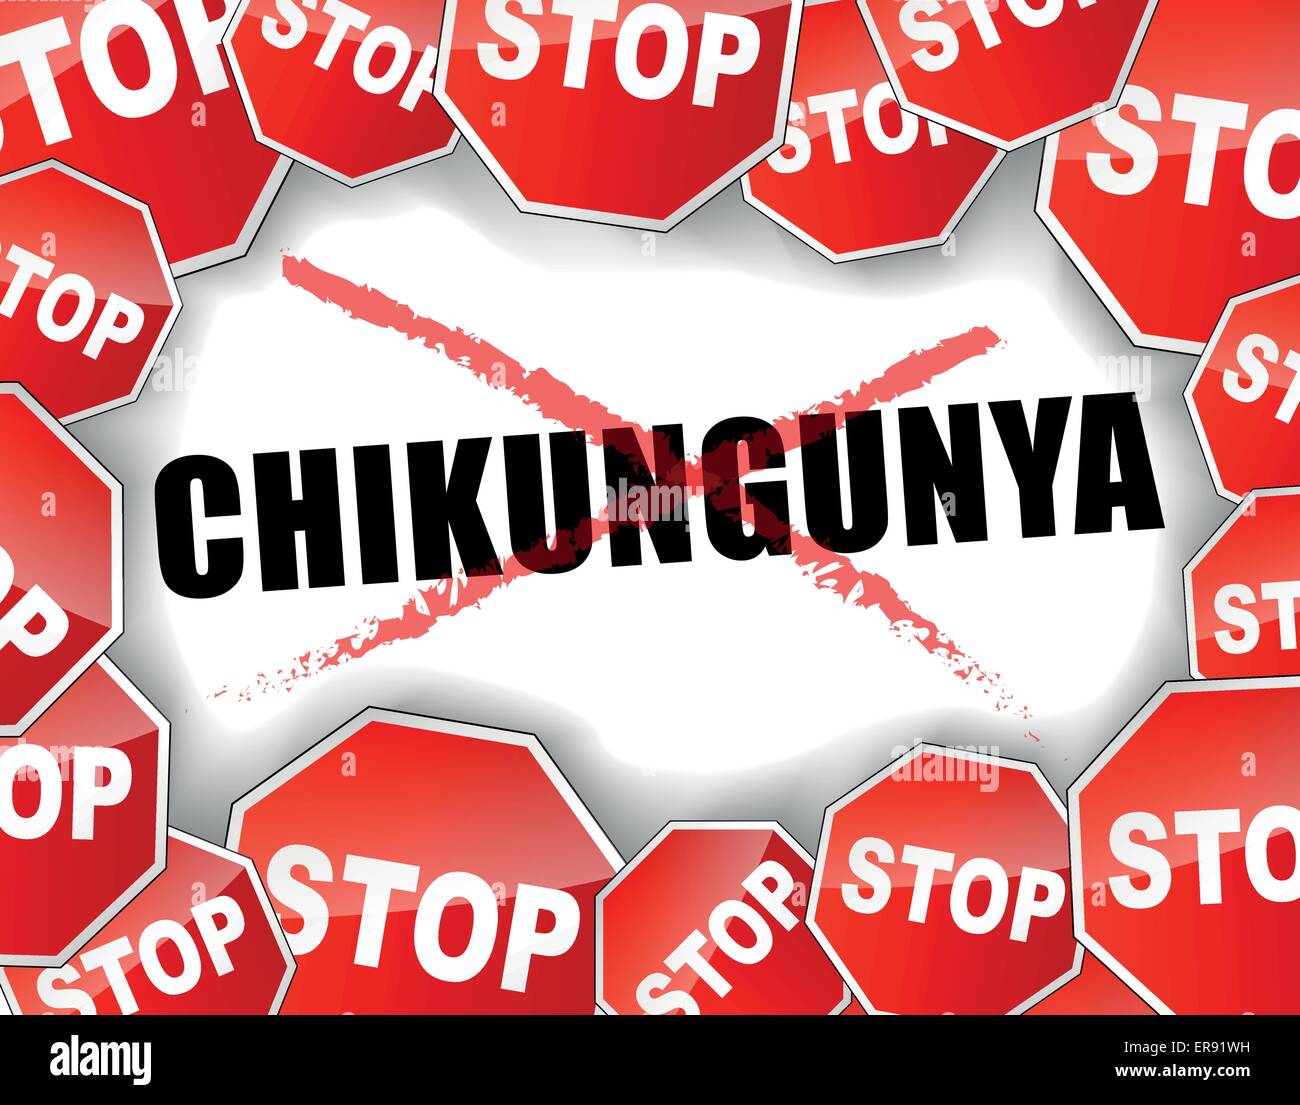 Vektor-Illustration von Stop Chikungunya-Epidemie-Konzept Stock Vektor